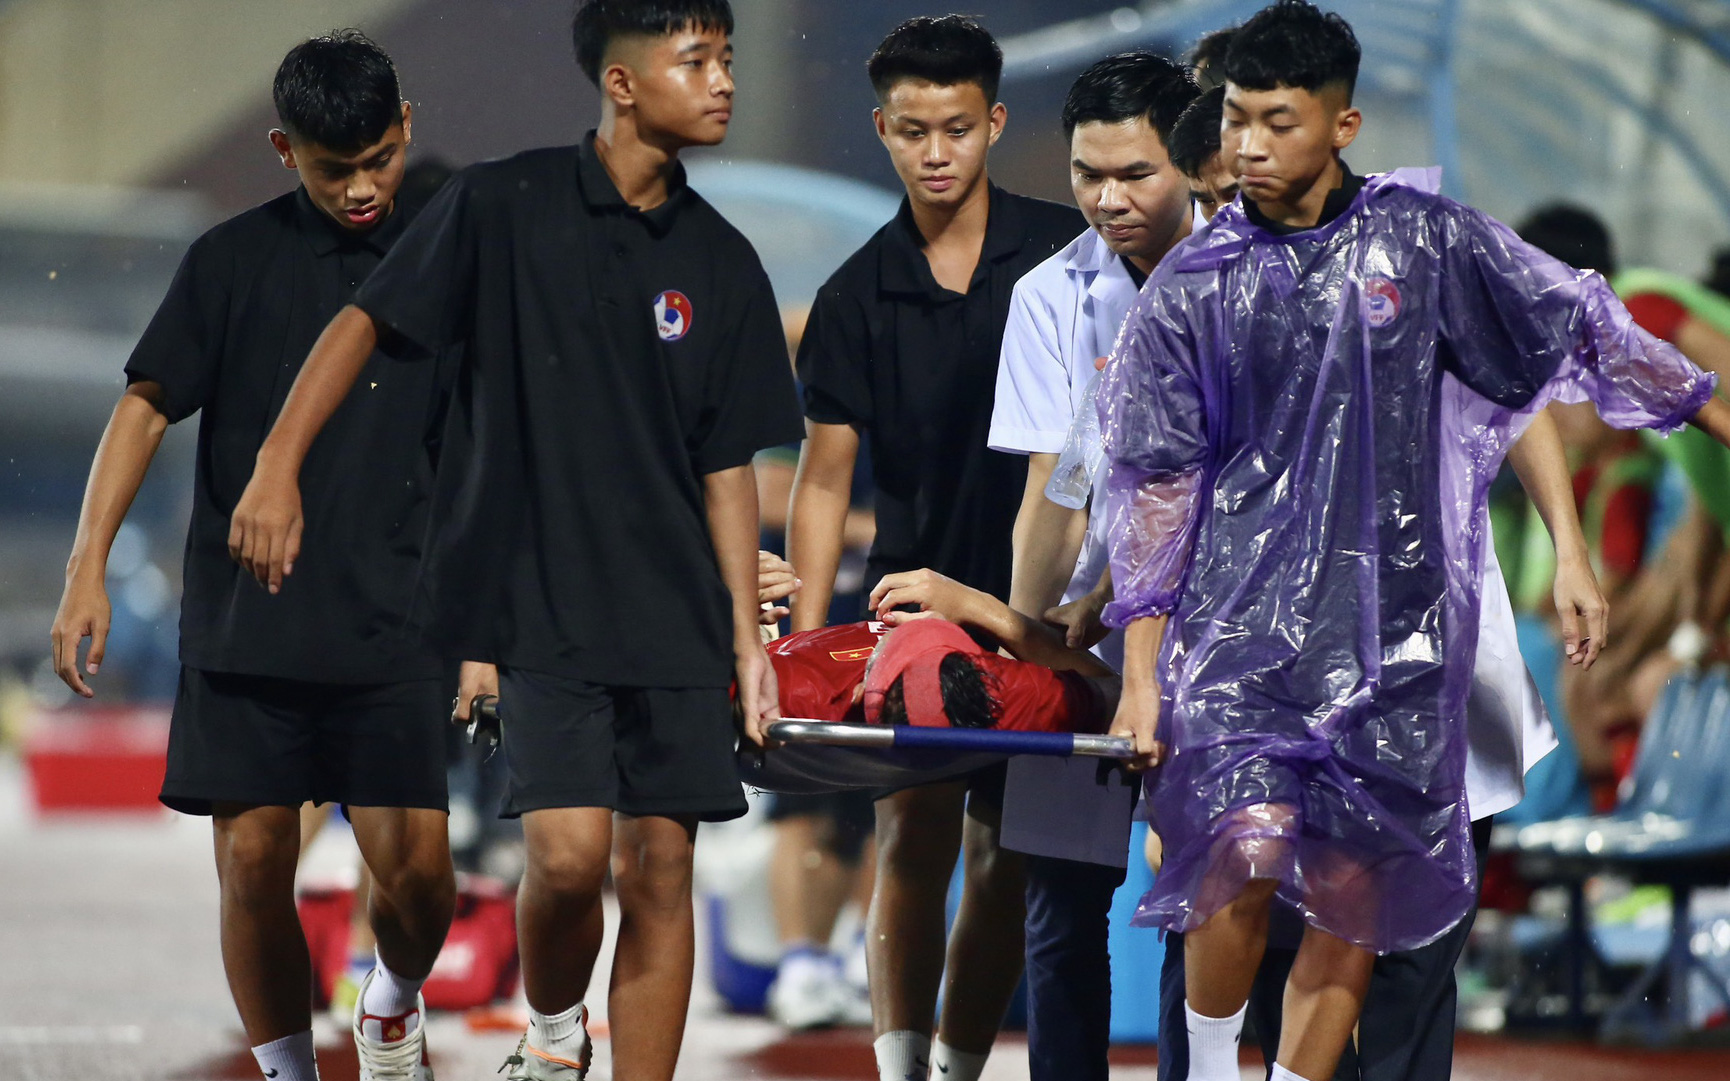 Sau 23 phút, hai cầu thủ đội tuyển Việt Nam phải vào viện cấp cứu